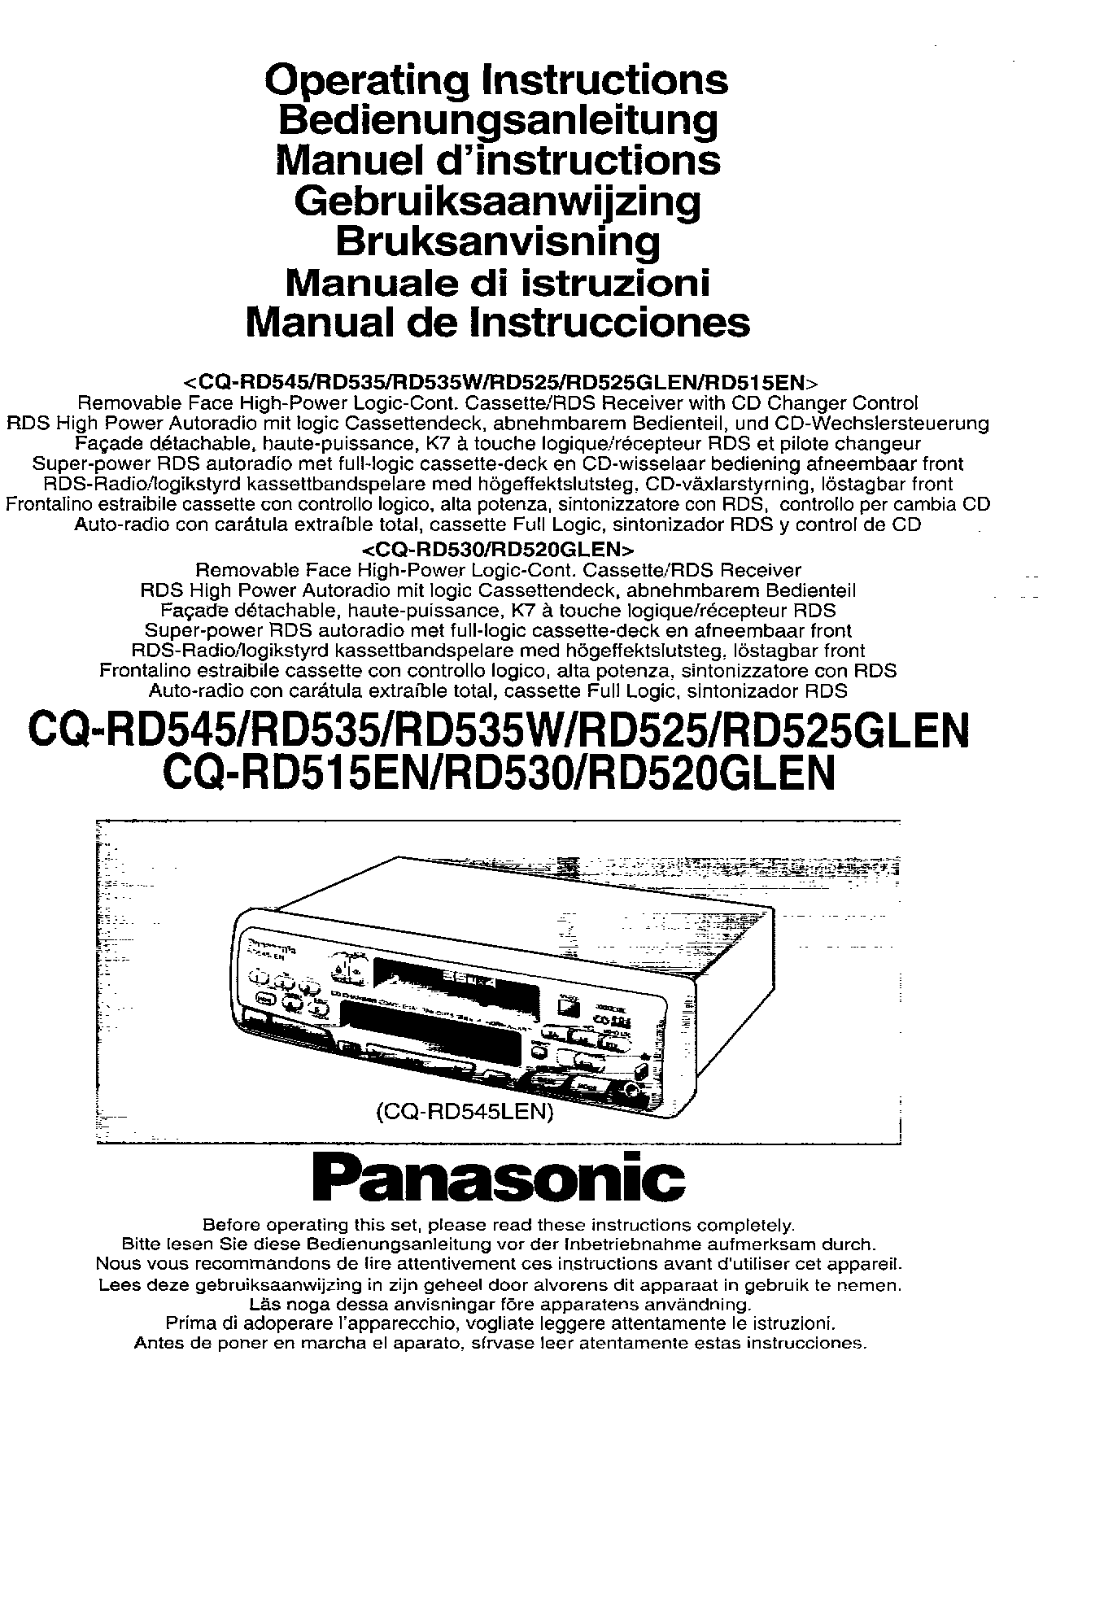 Panasonic CQ-RD520, CQ-RD535, CQ-RD545 User Manual